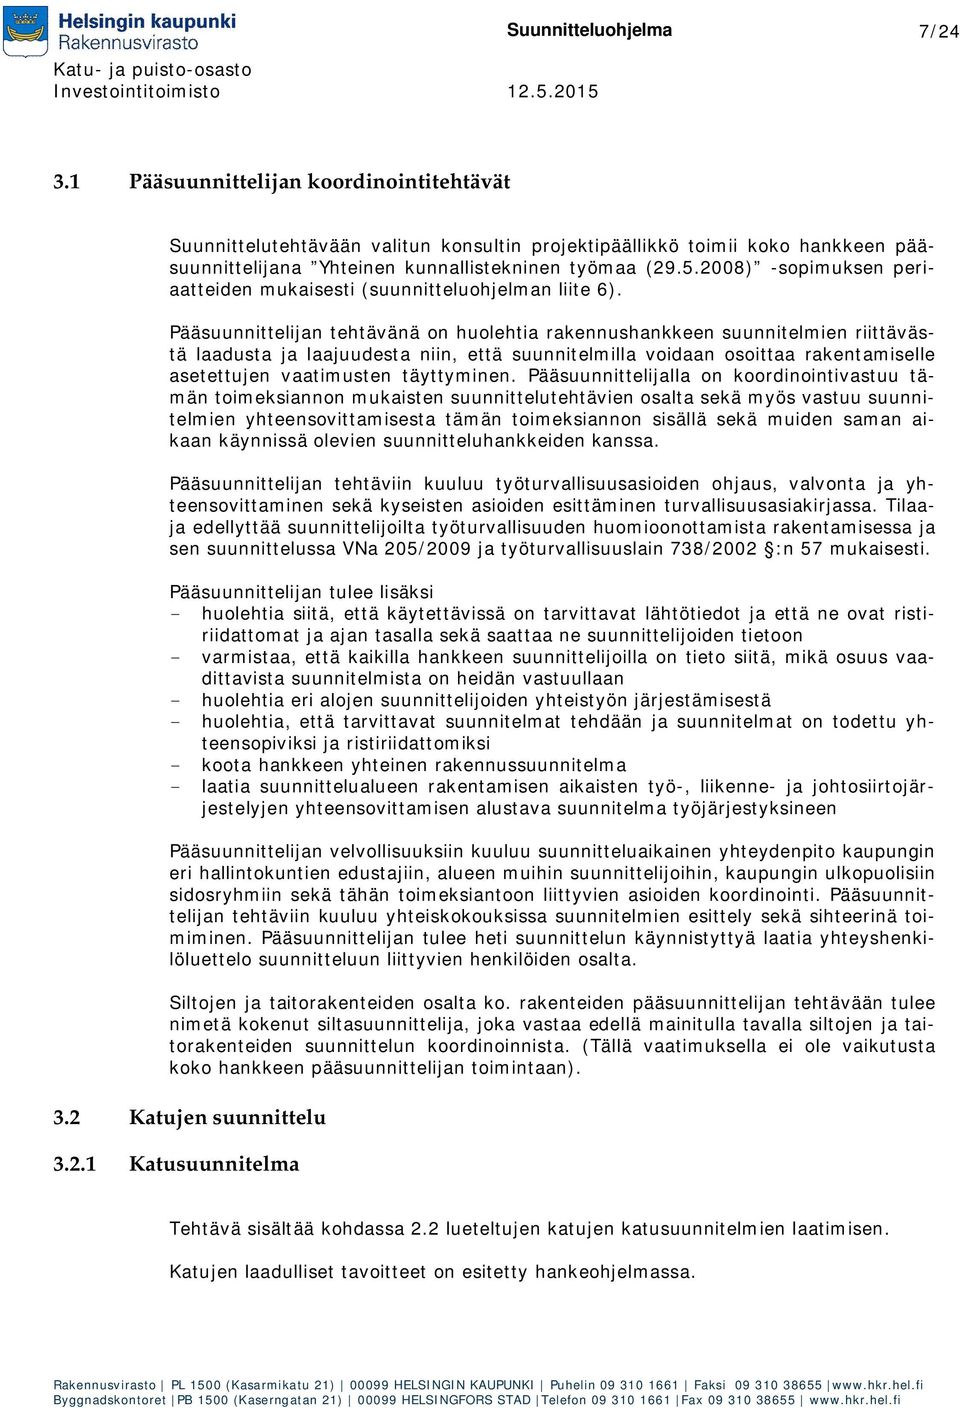 2008) -sopimuksen periaatteiden mukaisesti (suunnitteluohjelman liite 6).